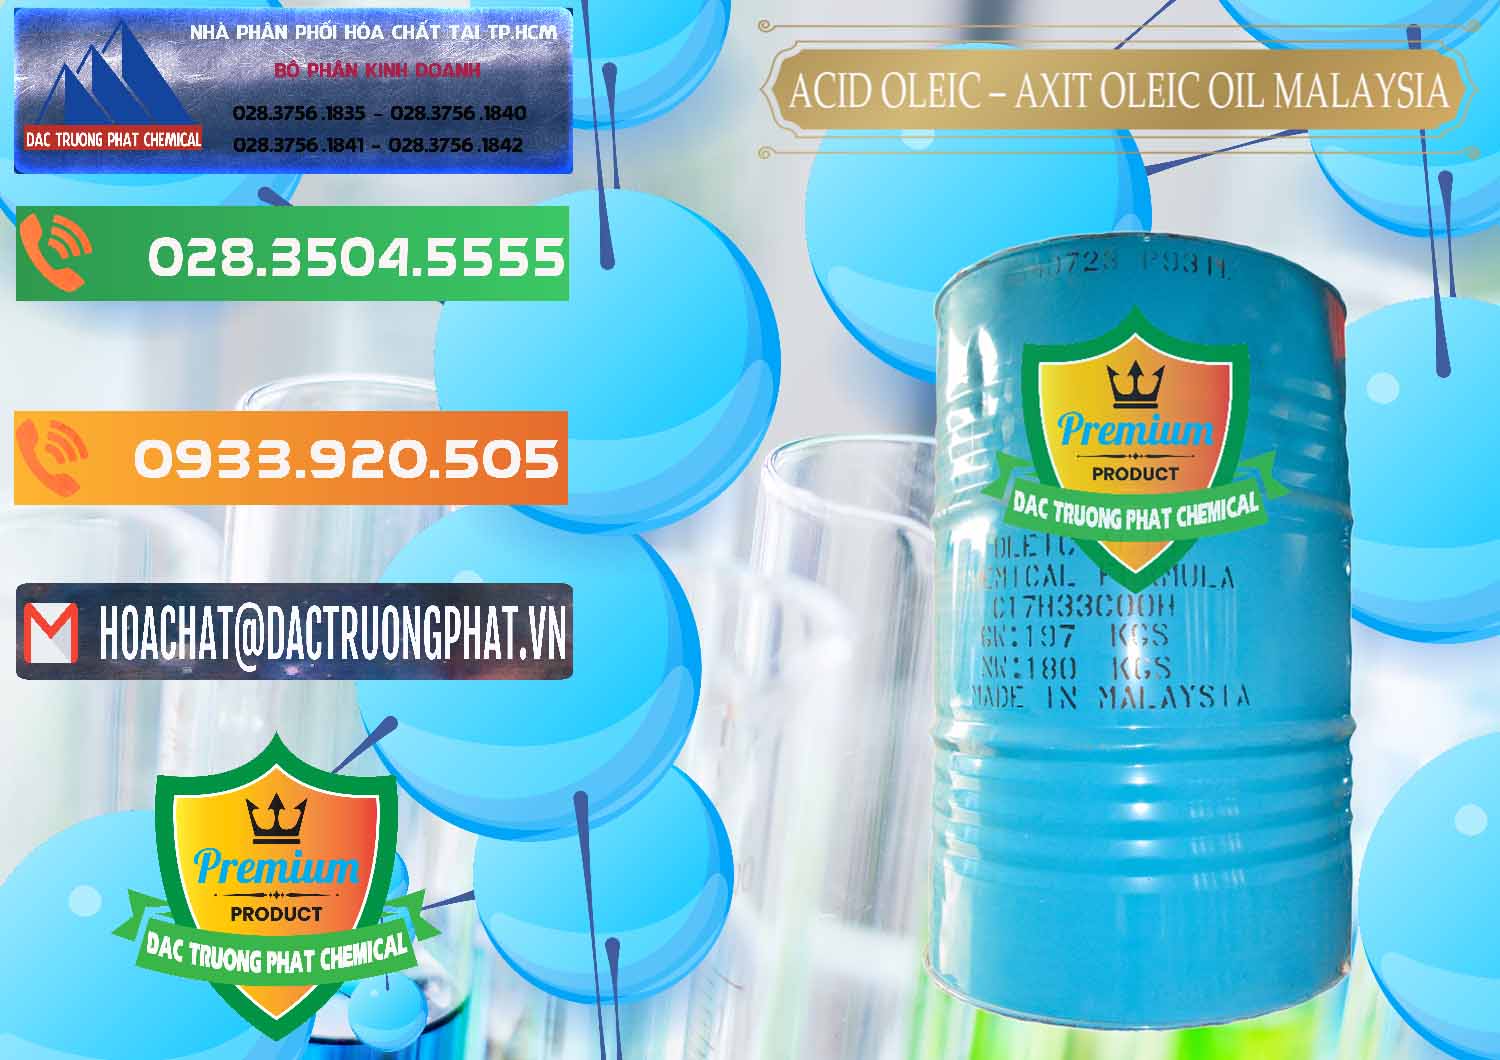 Cty chuyên bán ( cung ứng ) Acid Oleic – Axit Oleic Oil Malaysia - 0013 - Chuyên cung cấp và phân phối hóa chất tại TP.HCM - hoachatxulynuoc.com.vn